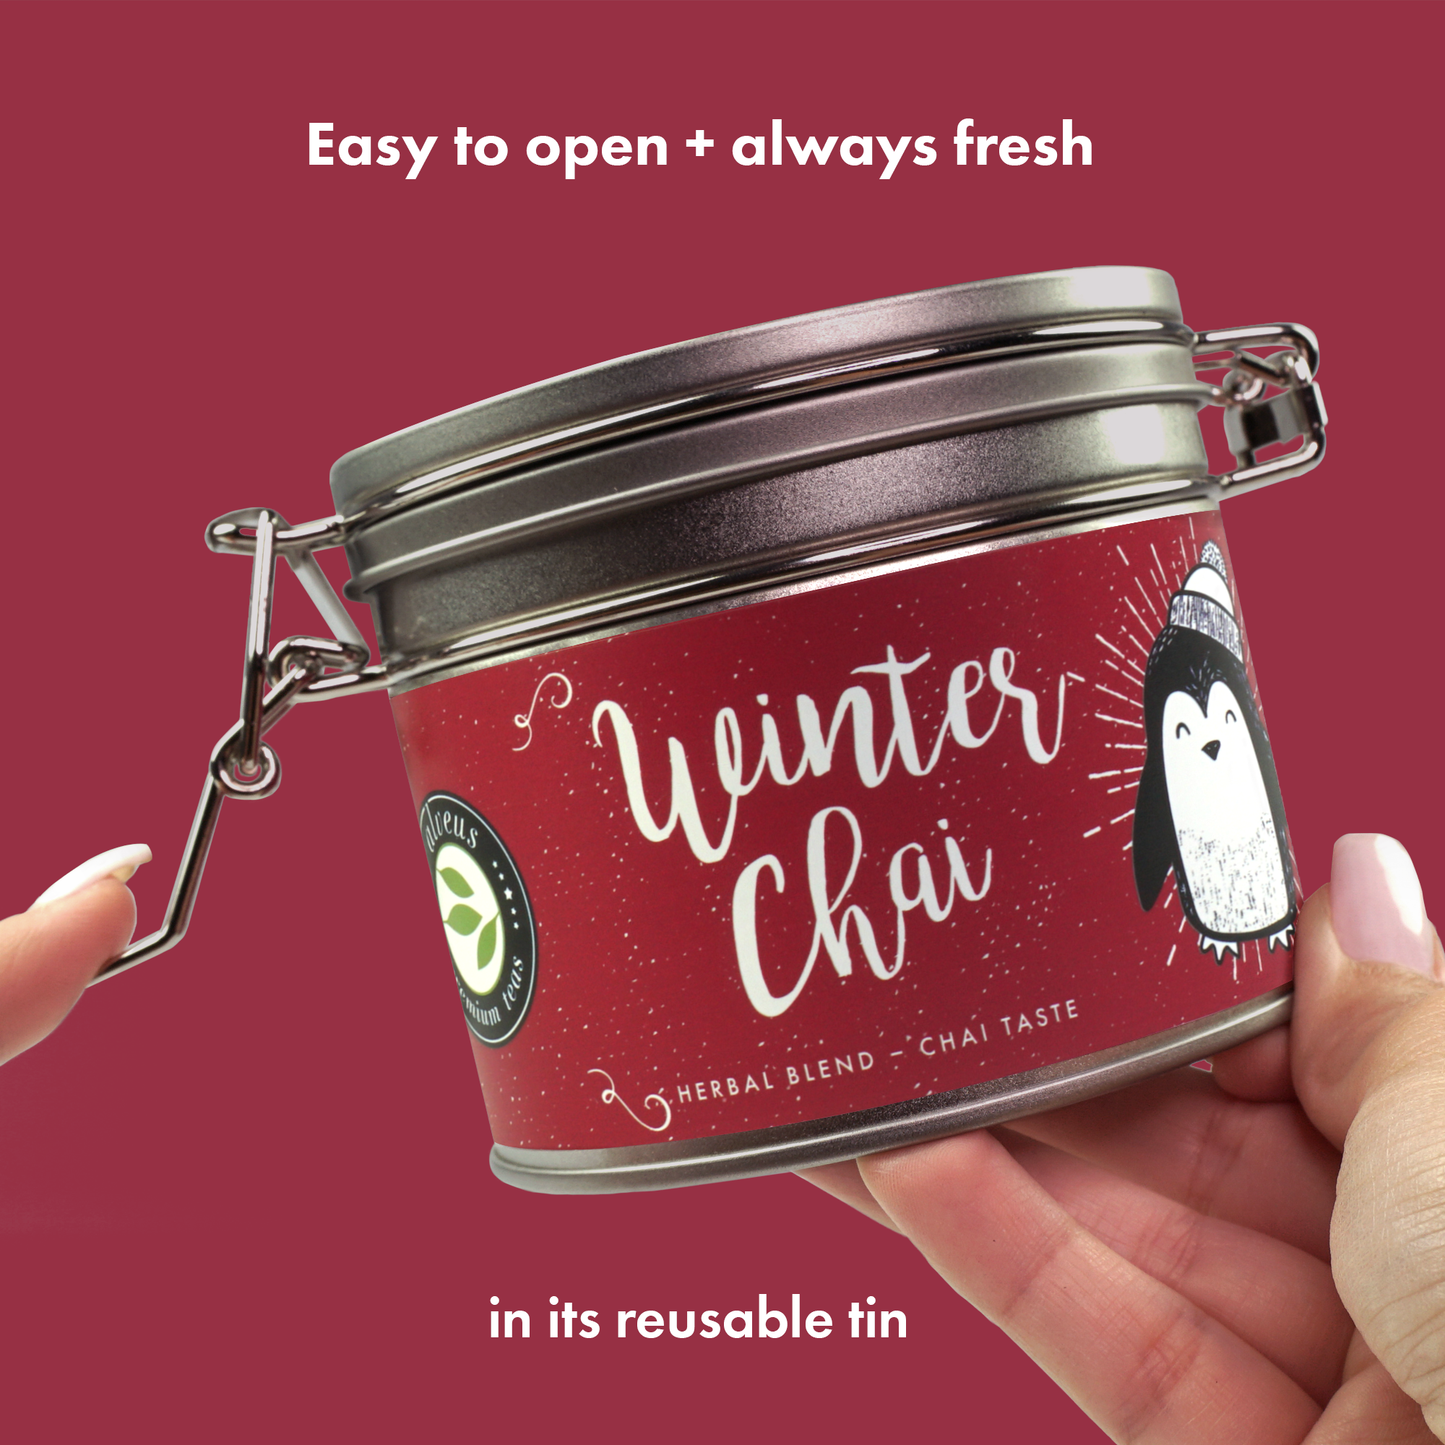 
                  
                    Winter Chai BIO - Saveur Chai 100g
                  
                